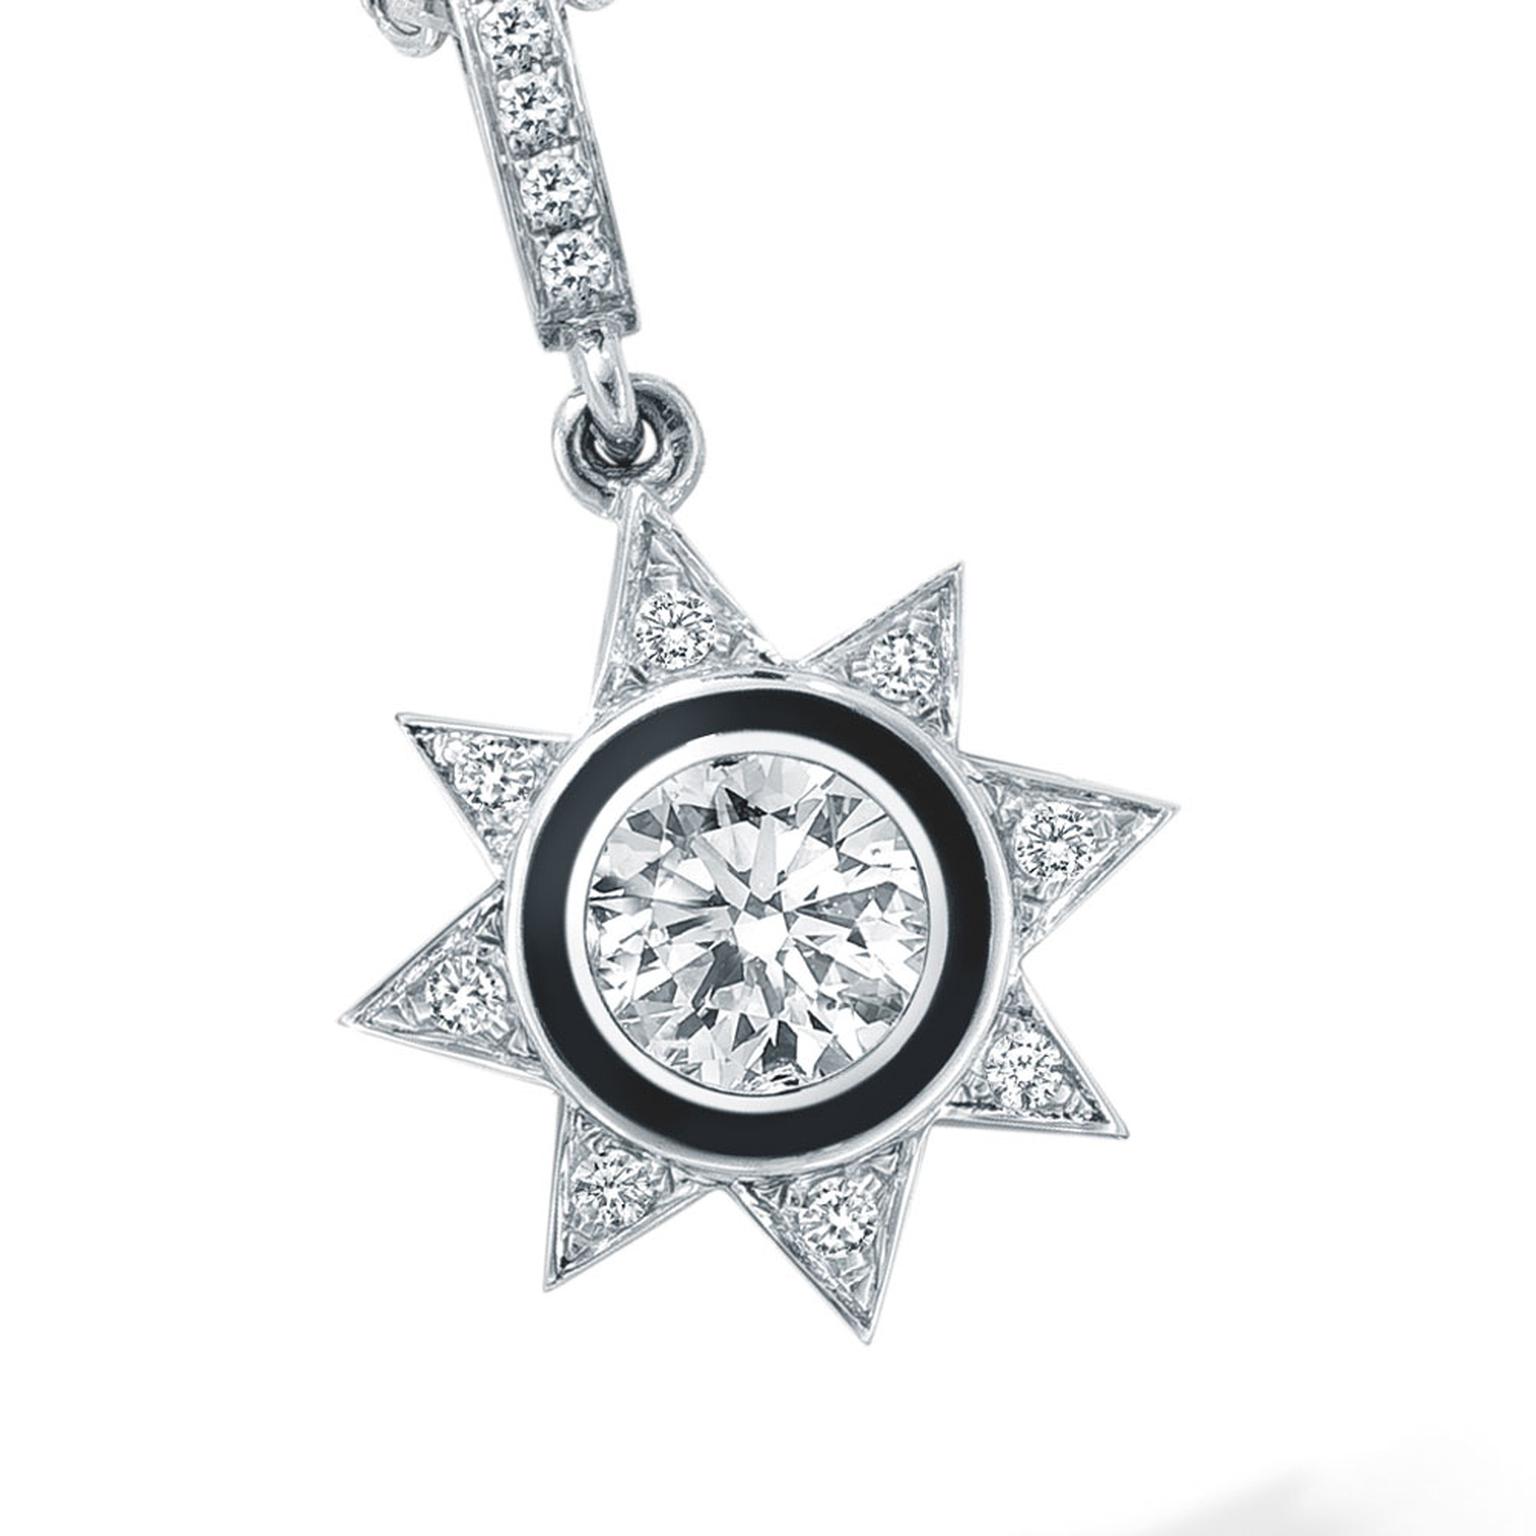 Celestial Boodles Cosmos diamond pendant